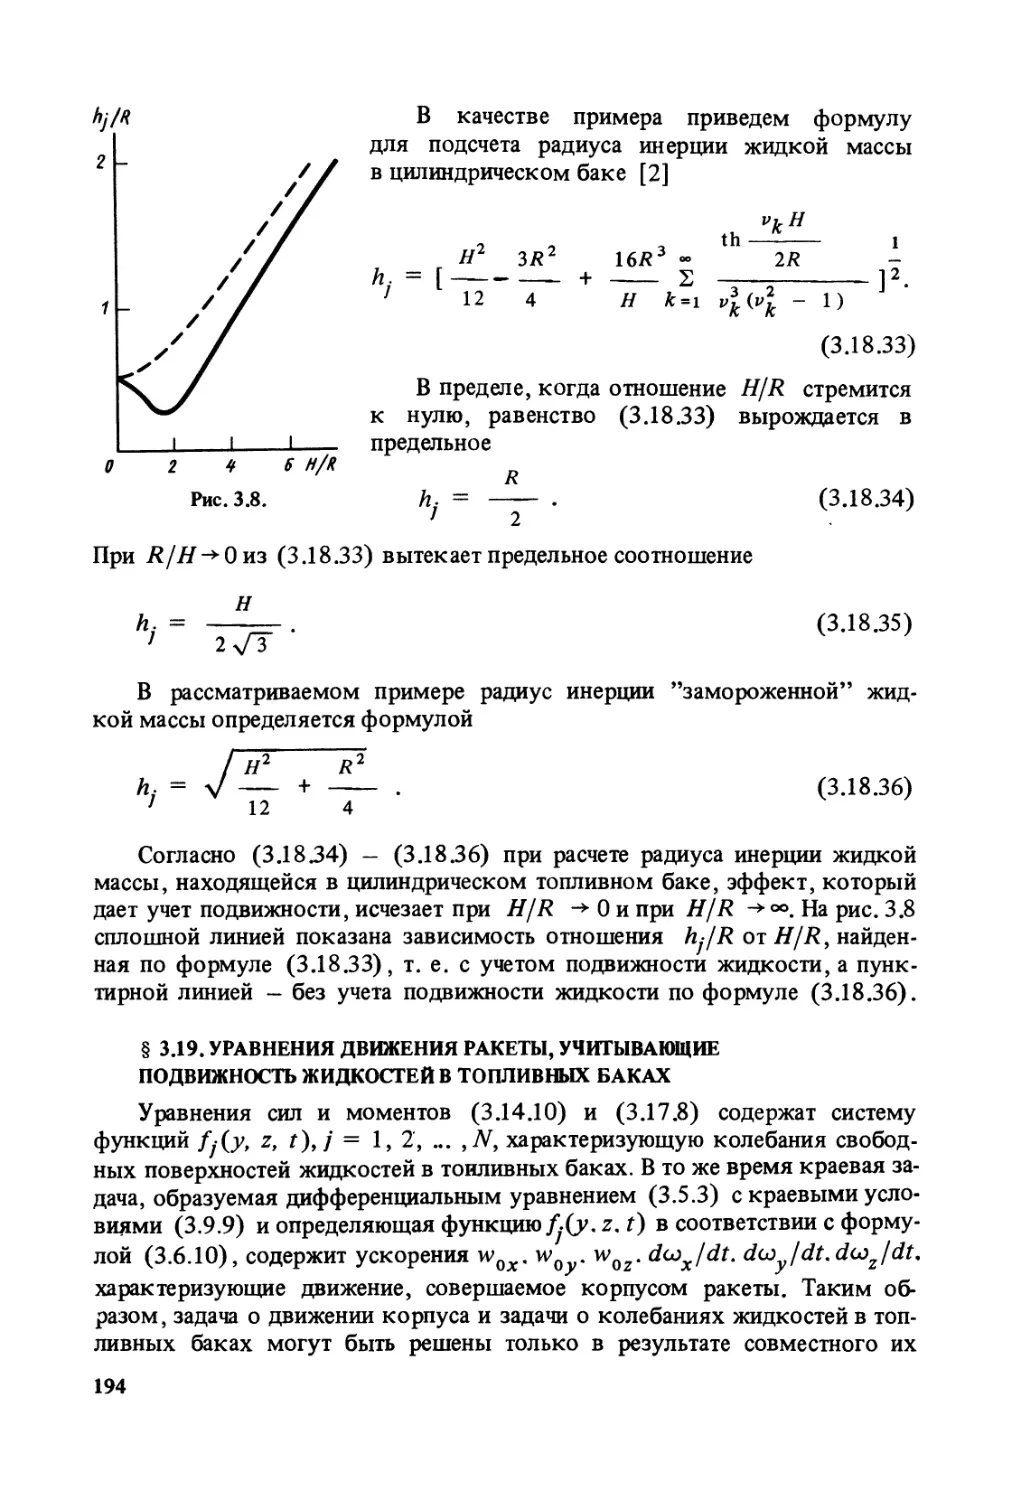 § 3.19. Уравнения движения ракеты, учитывающие подвижность жидкостей в топливных баках